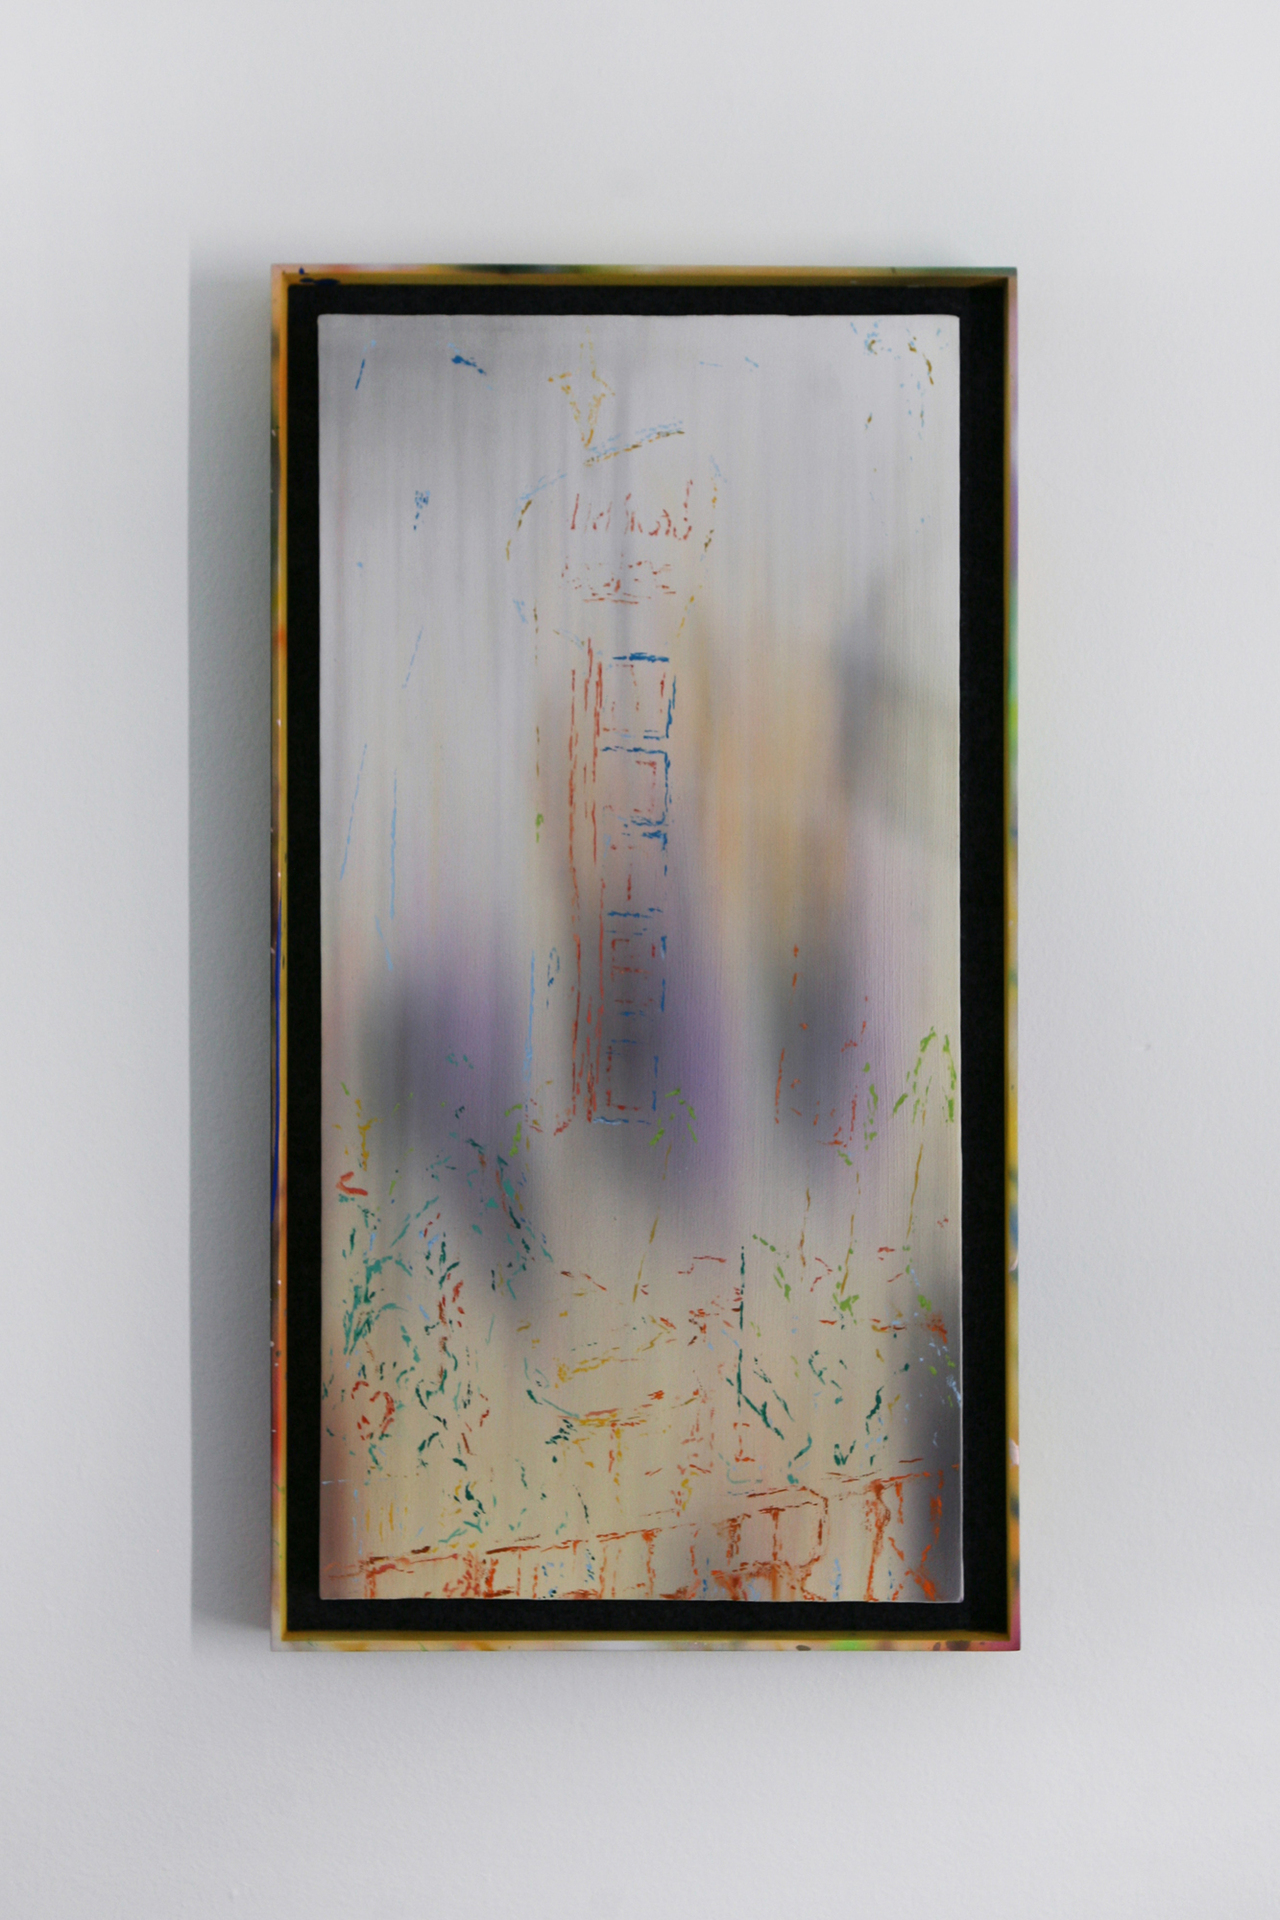 Jason Burgess, Hollywood Ending / Thai Town, 2021, Oil and acrylic on canvas in pine, felt, and acrylic frame, 66 x 36 cm